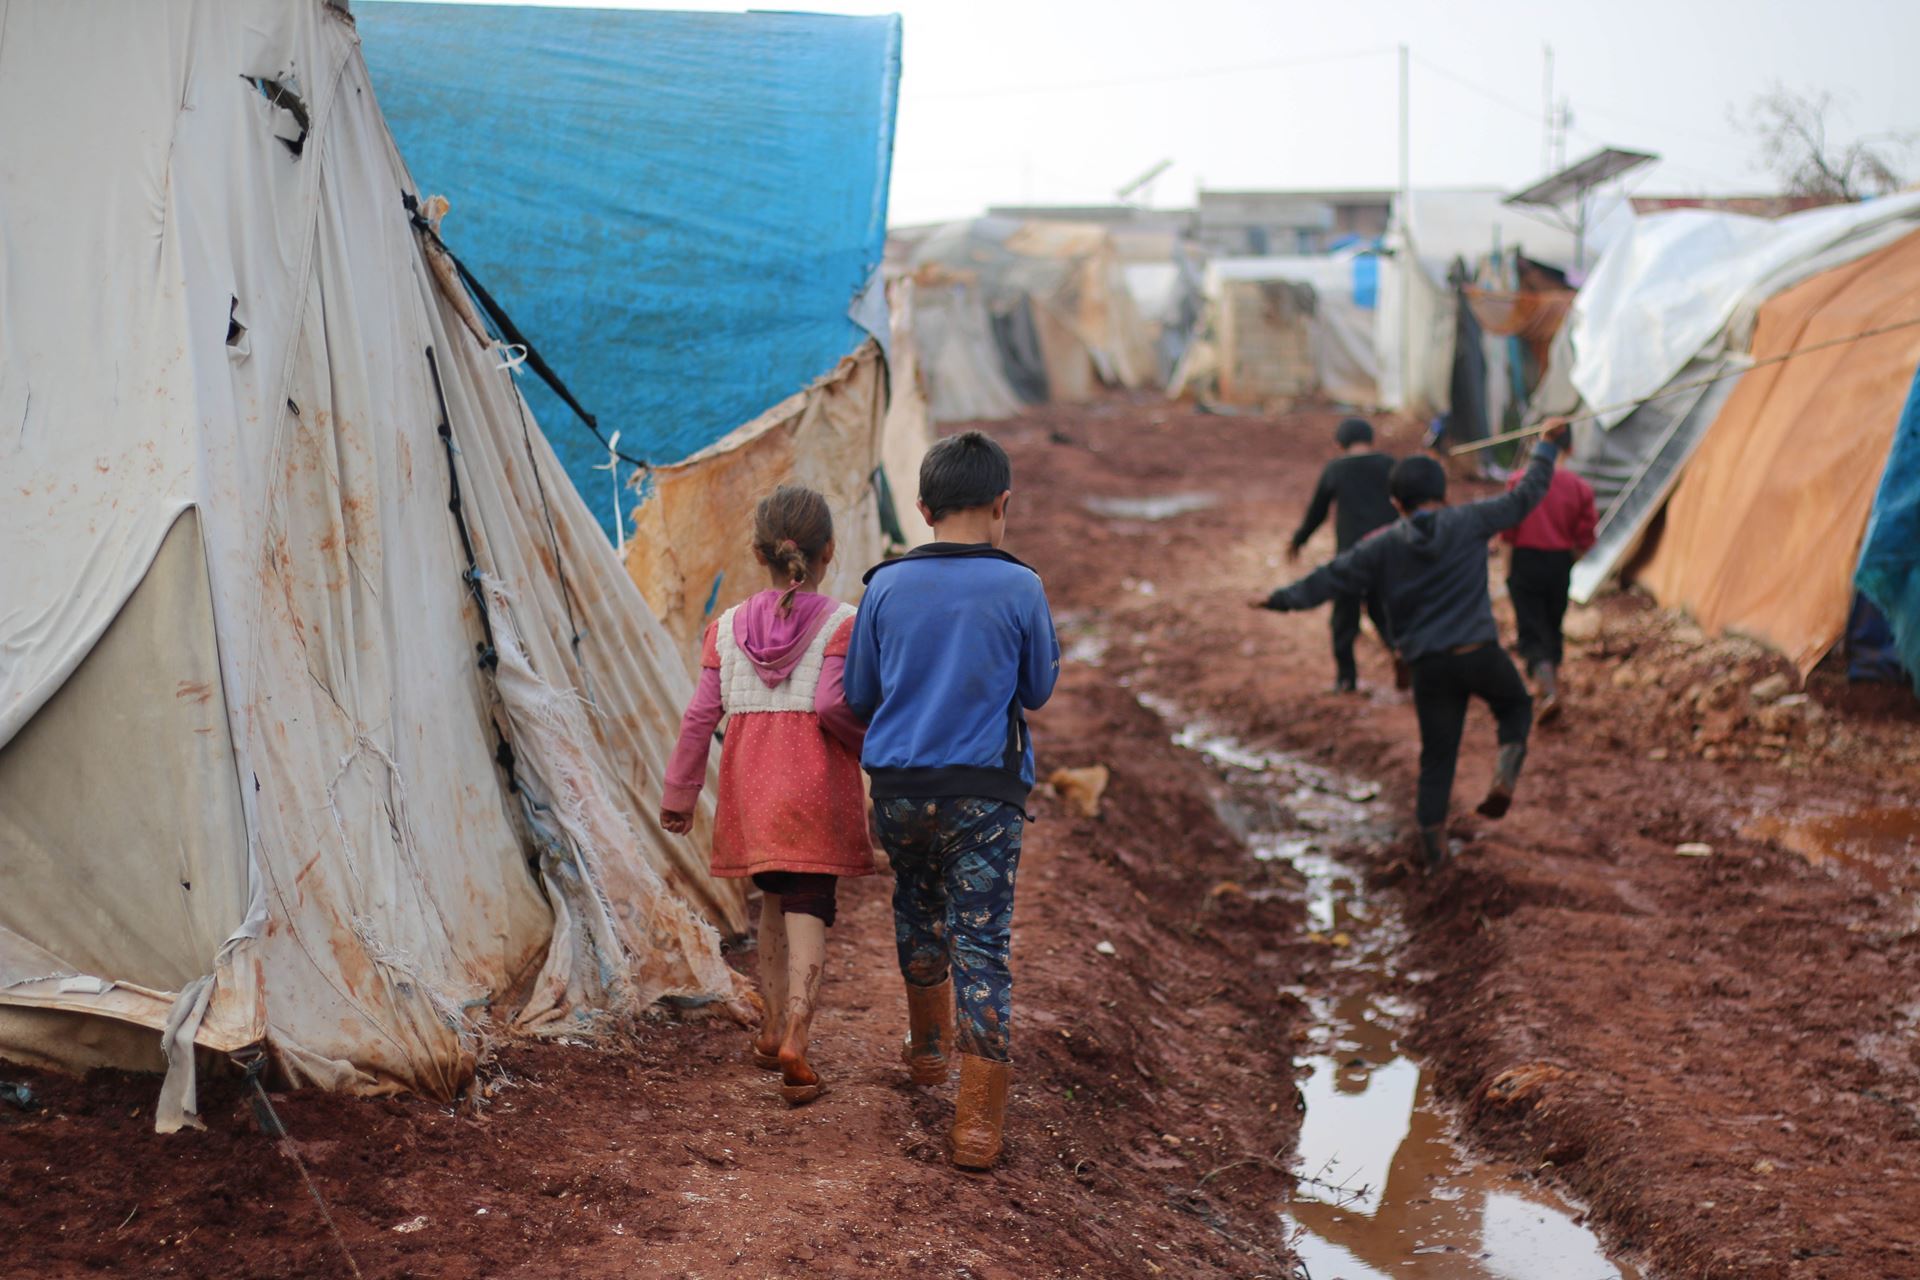 Children in a resettlement camp